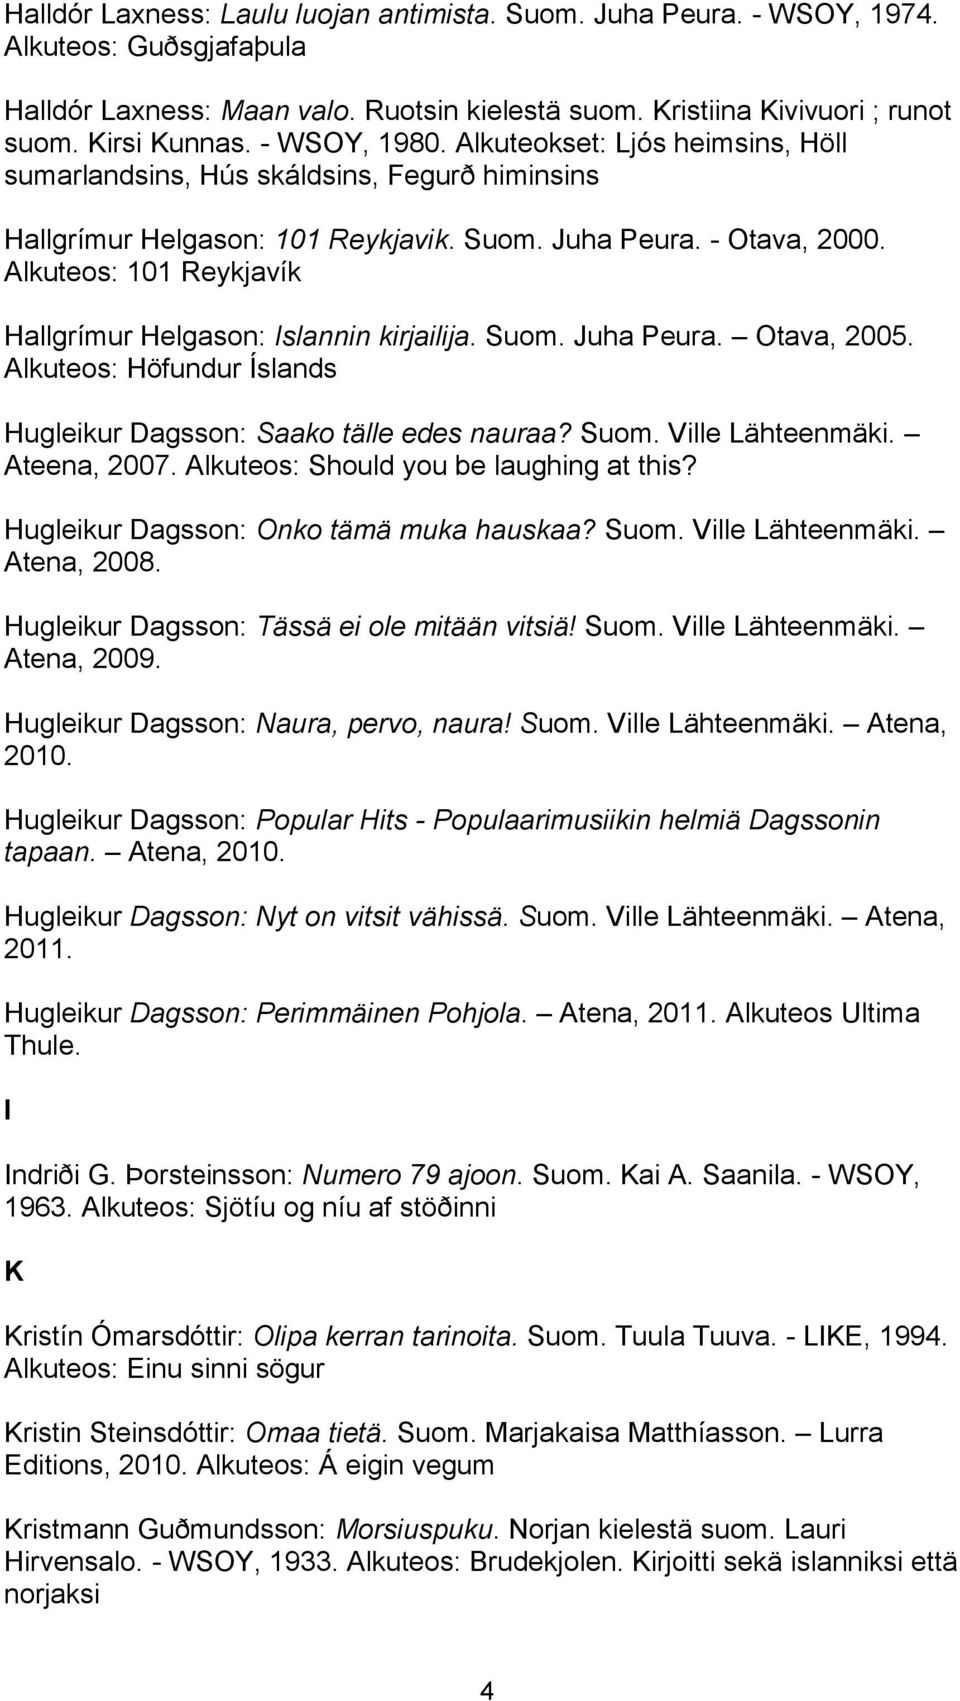 Alkuteos: 101 Reykjavík Hallgrímur Helgason: Islannin kirjailija. Suom. Juha Peura. Otava, 2005. Alkuteos: Höfundur Íslands Hugleikur Dagsson: Saako tälle edes nauraa? Suom. Ville Lähteenmäki.